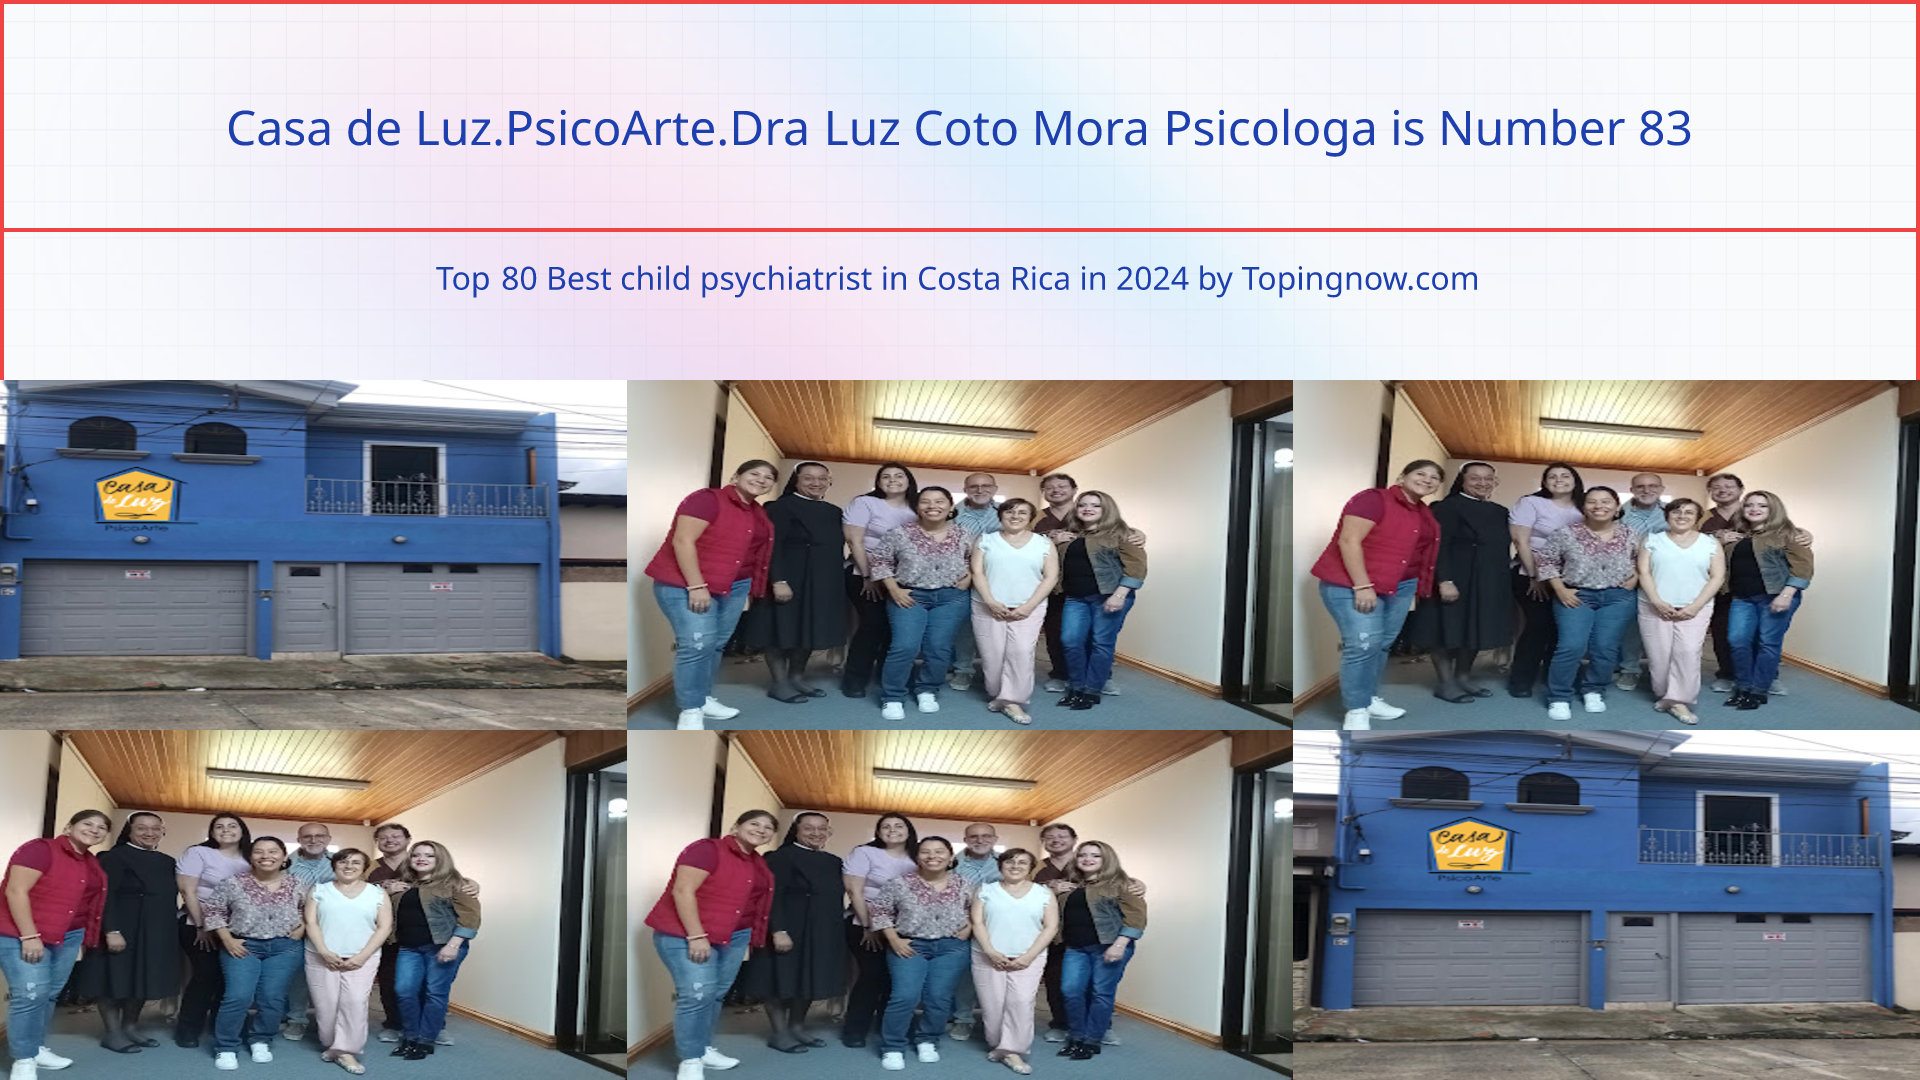 Casa de Luz.PsicoArte.Dra Luz Coto Mora Psicologa: Top 80 Best child psychiatrist in Costa Rica in 2024